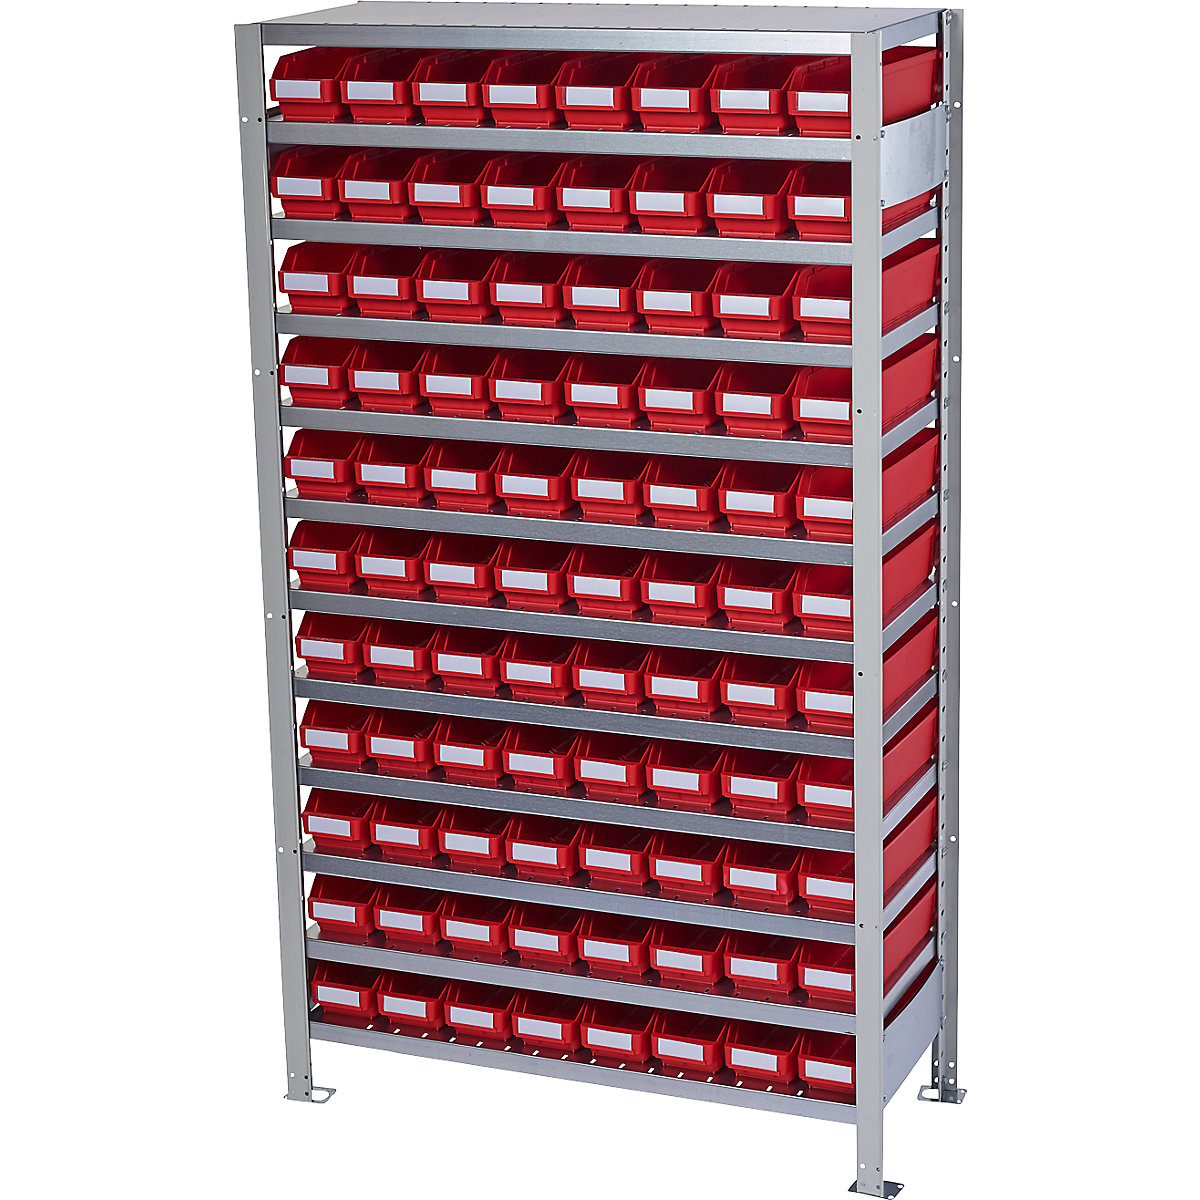 Zásuvný regál s regálovými přepravkami – STEMO, výška regálu 1790 mm, základní regál, hloubka 300 mm, 88 přepravek červených-10